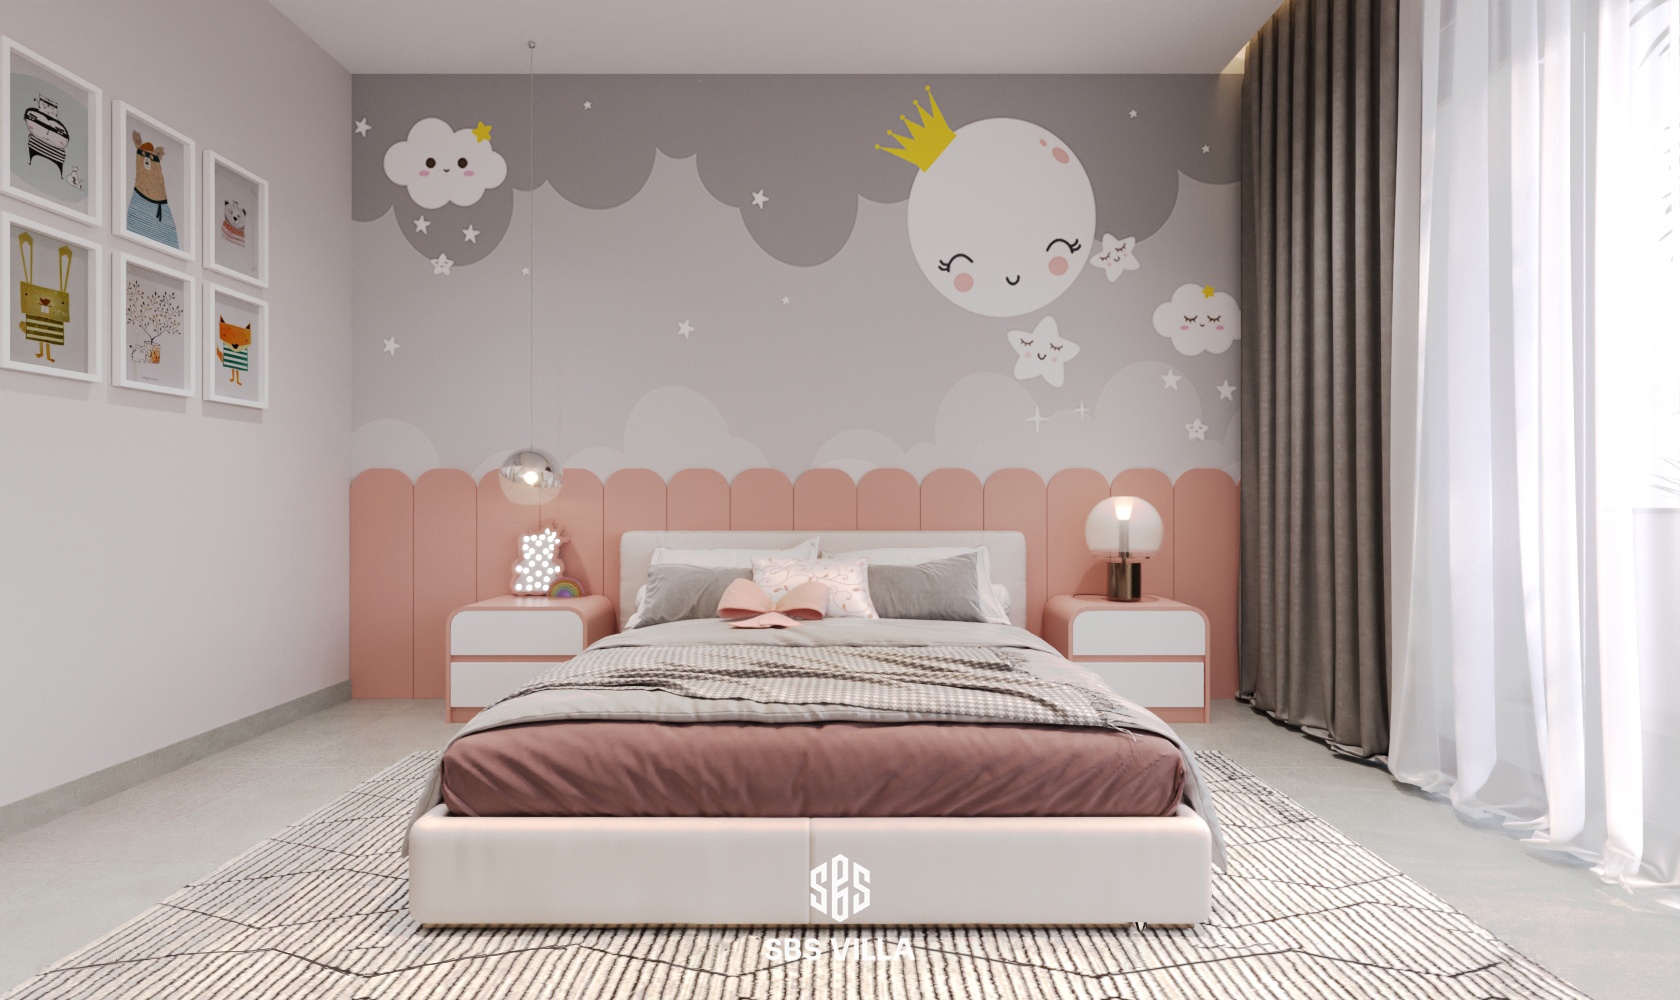 Phòng ngủ cho bé mang tone màu hồng - xám tươi sáng